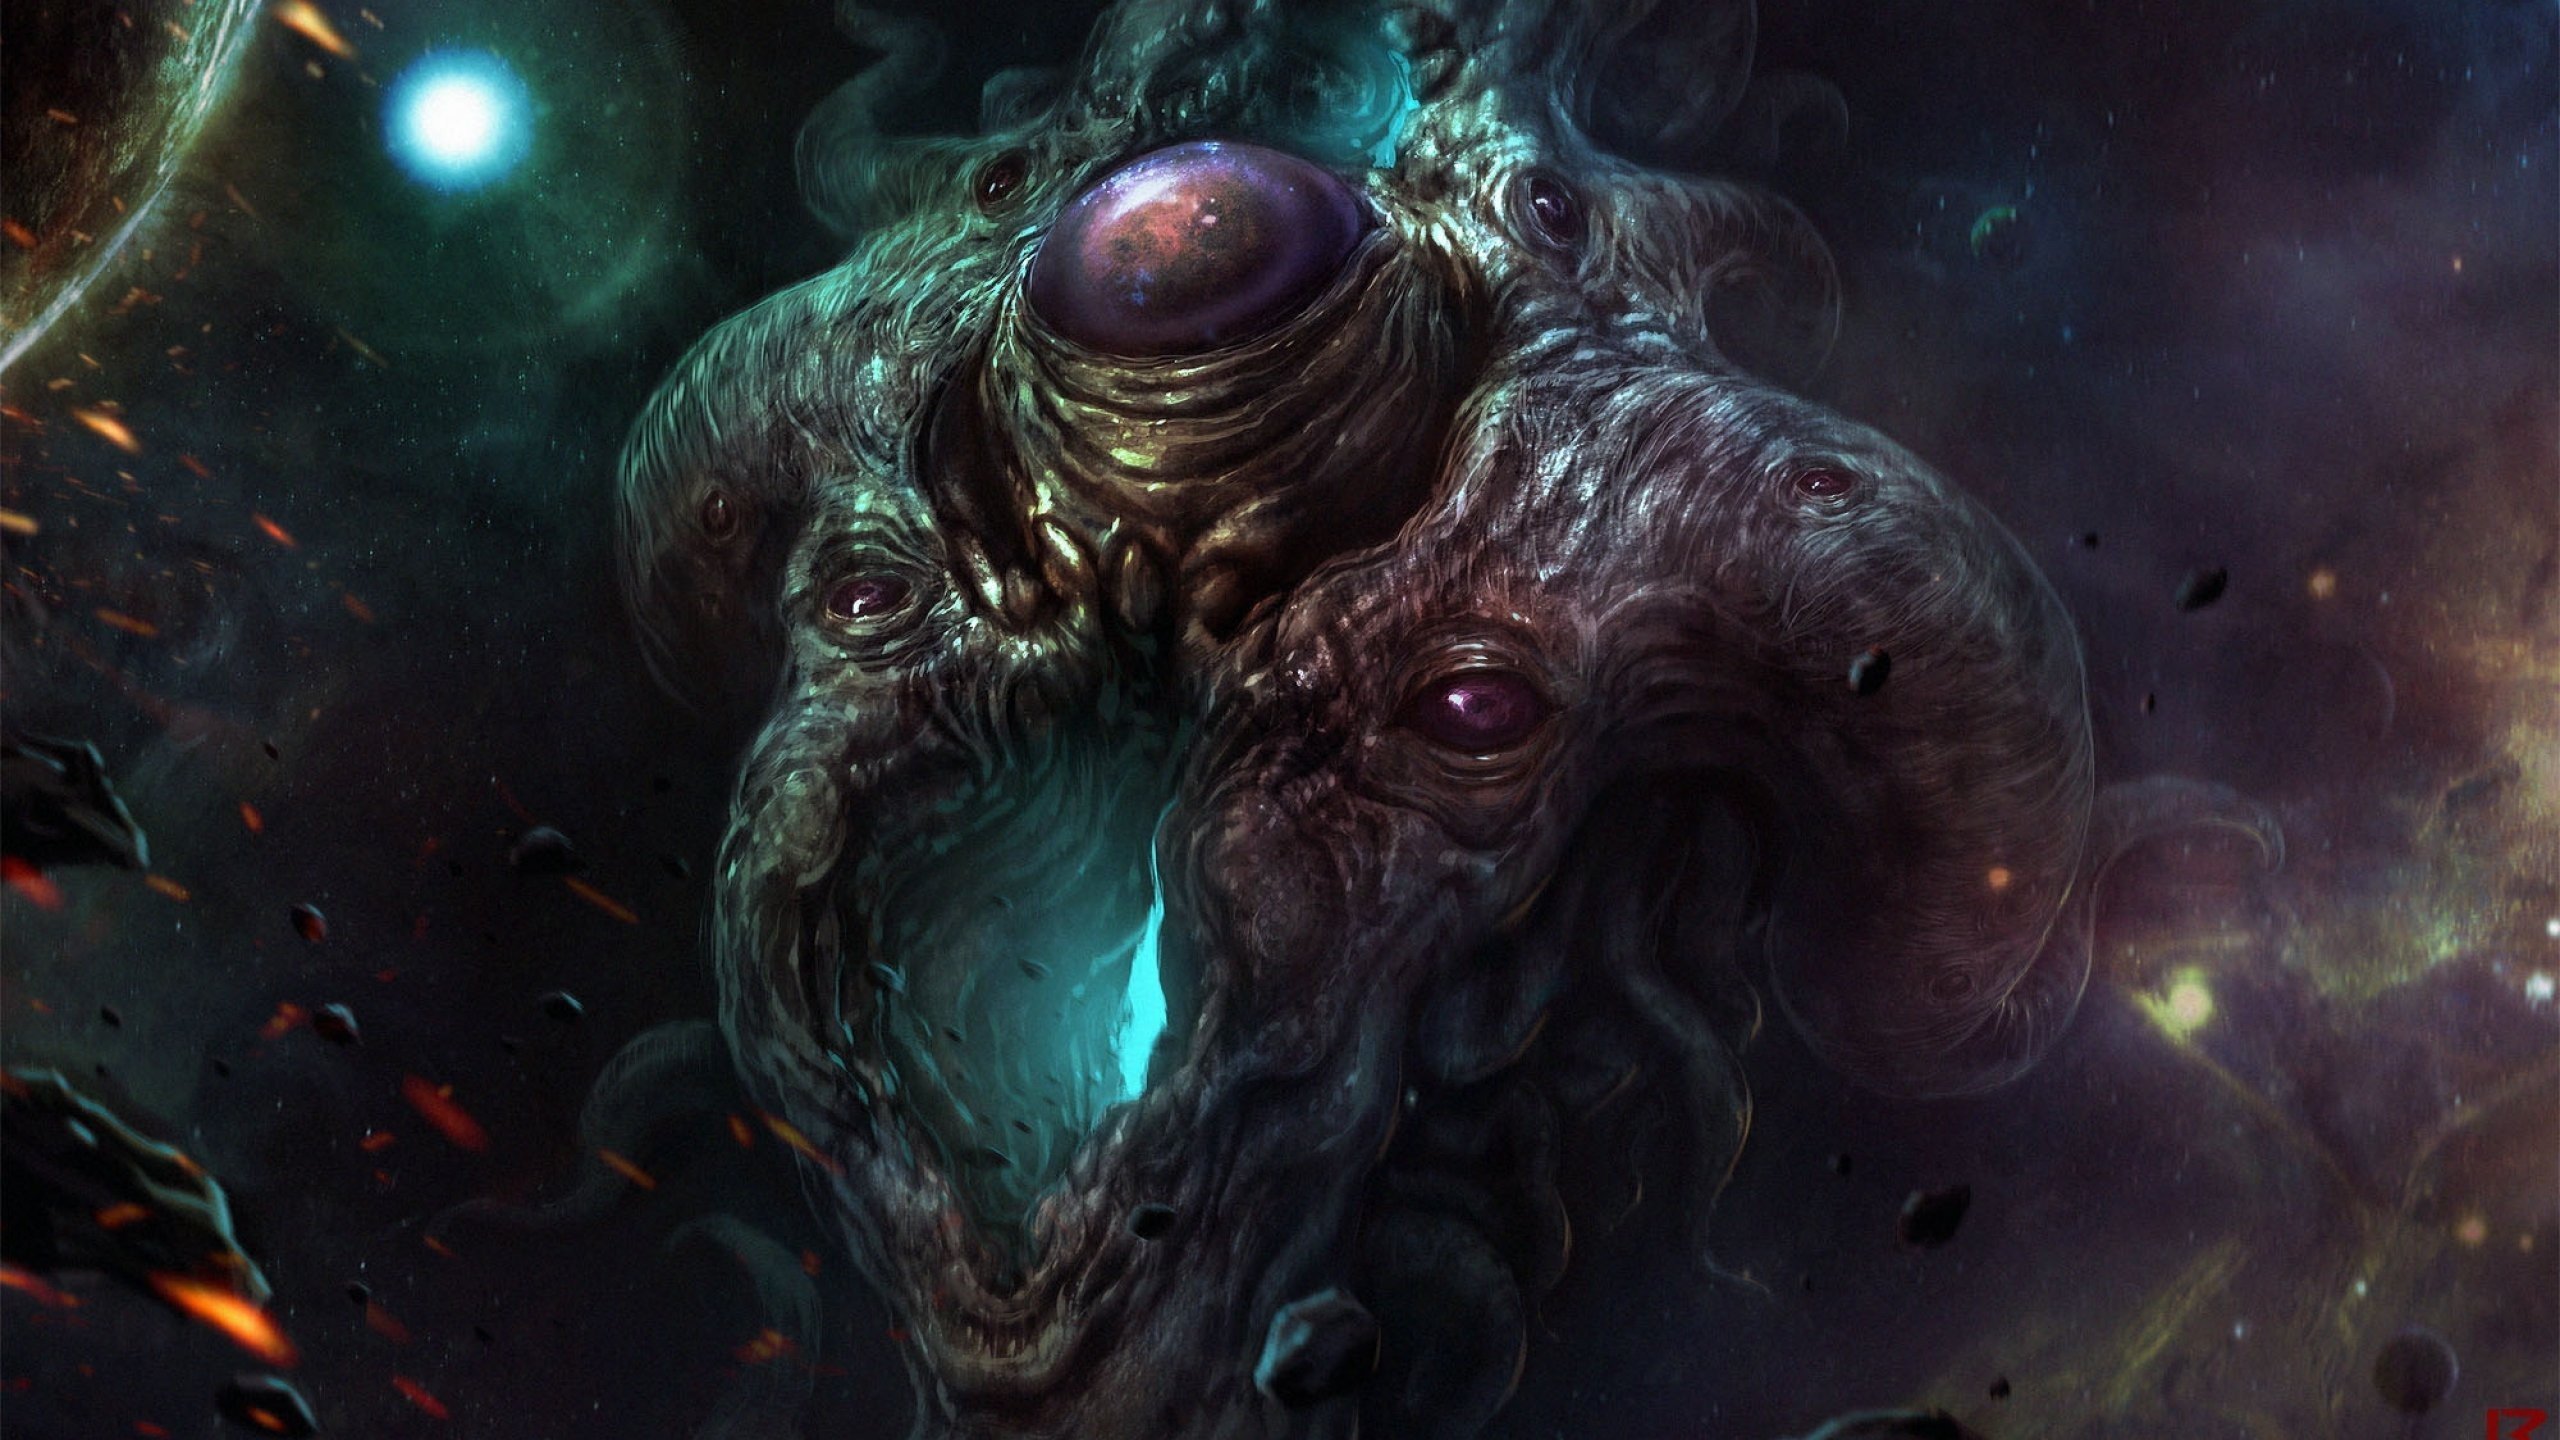 The Cosmic Horror (H.P. Lovecraft inspired artwork)